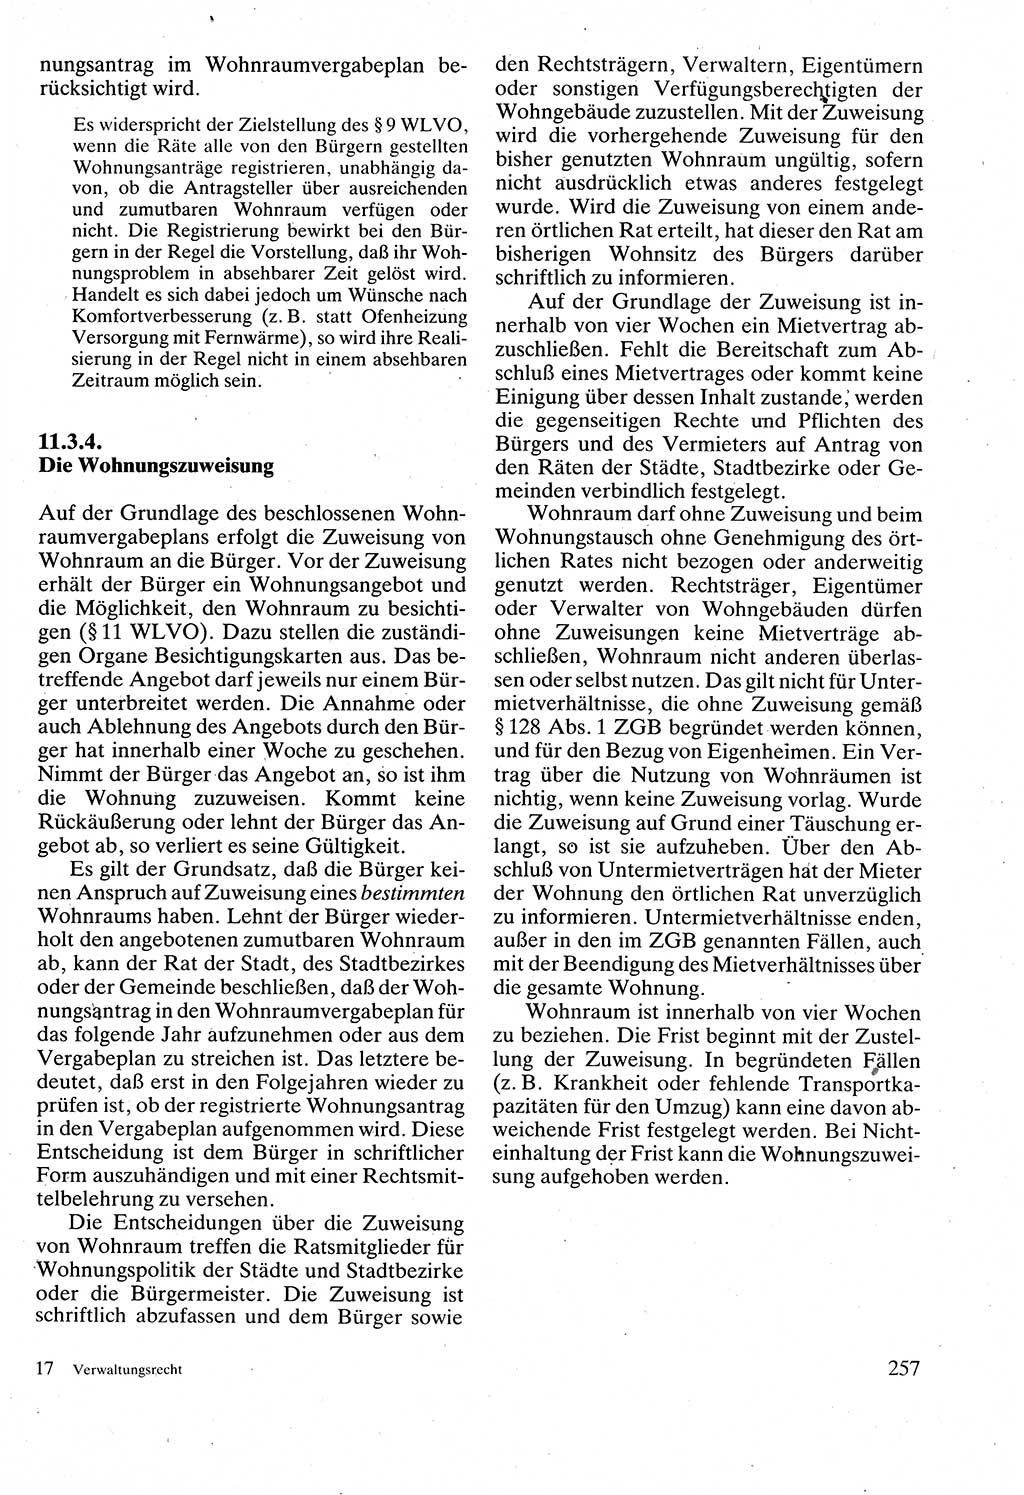 Verwaltungsrecht [Deutsche Demokratische Republik (DDR)], Lehrbuch 1988, Seite 257 (Verw.-R. DDR Lb. 1988, S. 257)